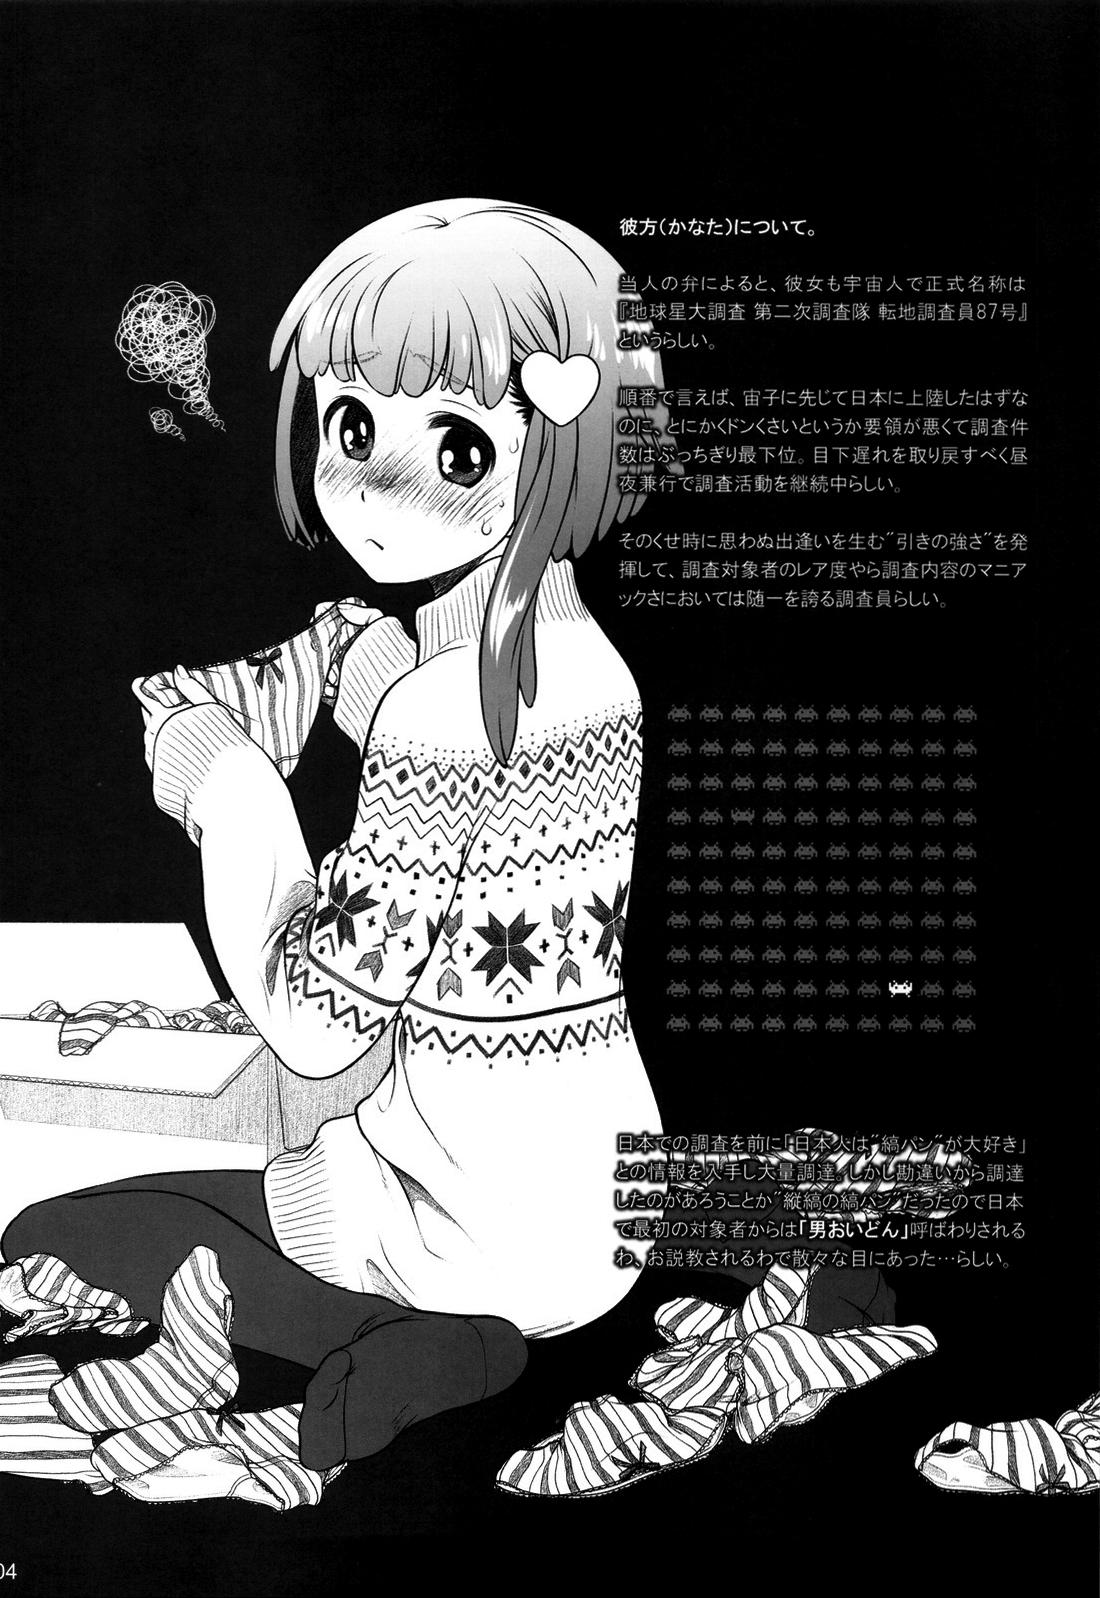 Nude Sorako no Tabi 4 - Kanata no Tabi Asshole - Page 3